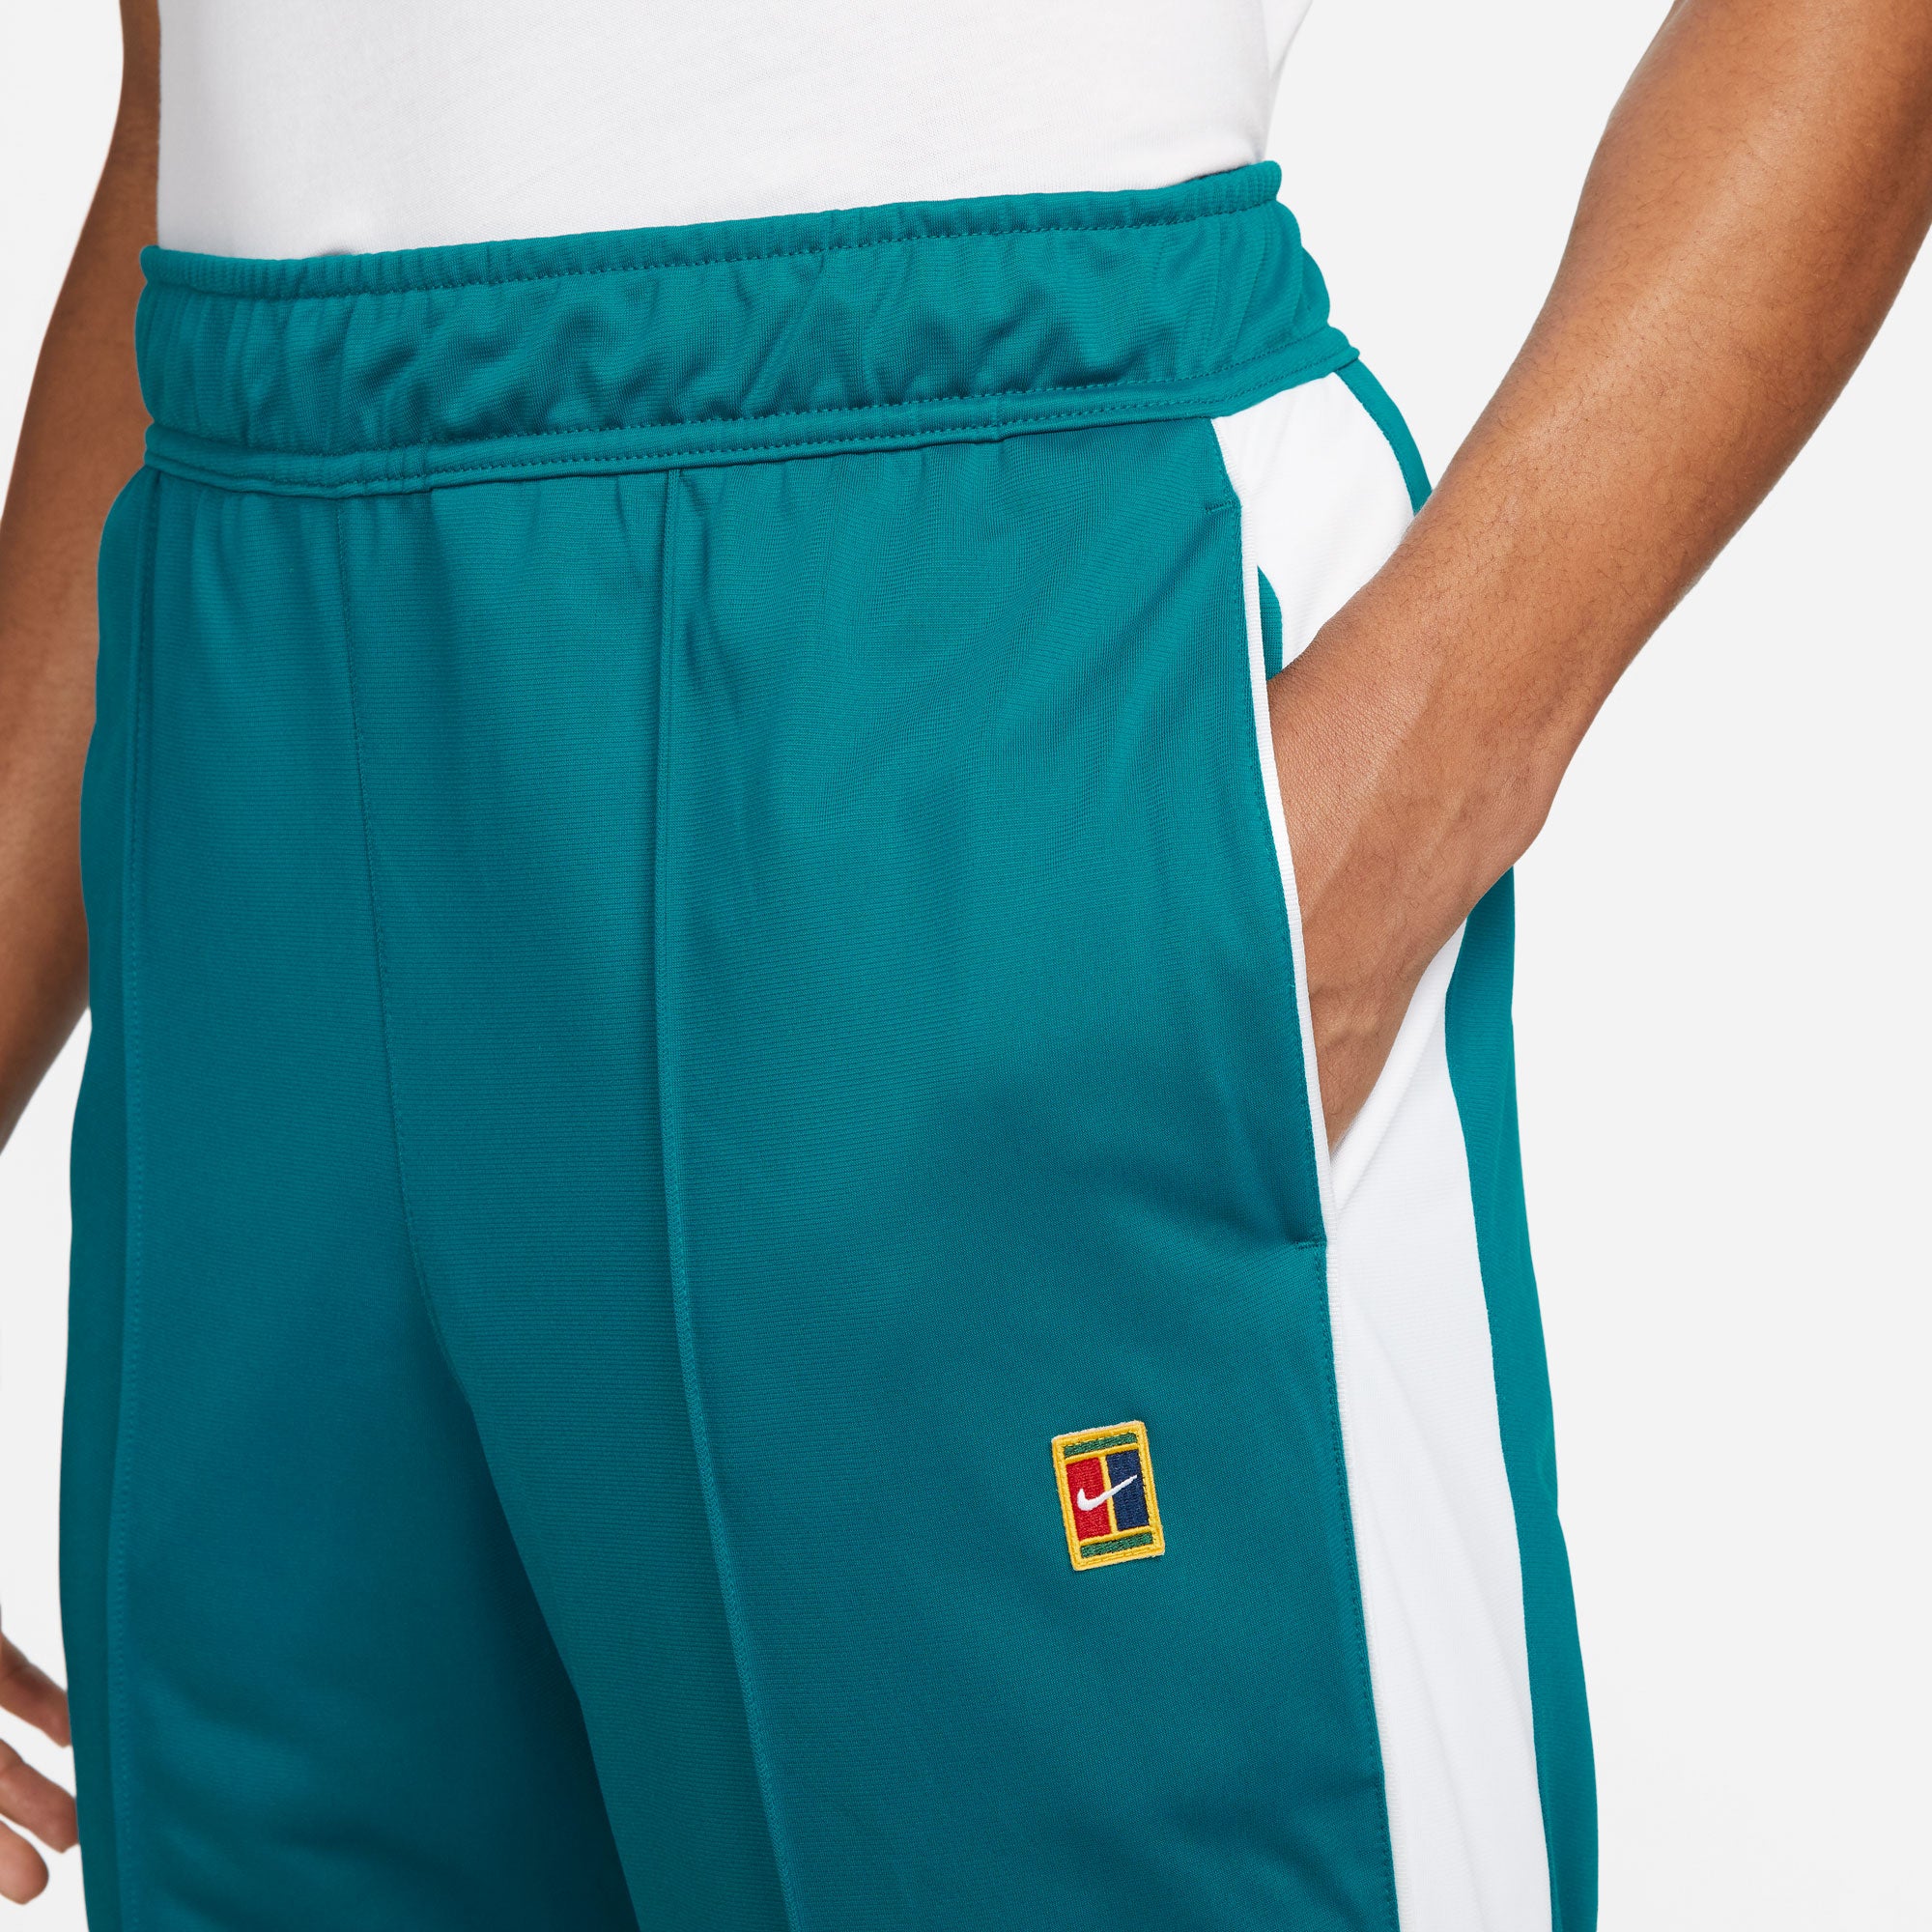 NikeCourt Heritage Men's Tennis Pants Green (4)